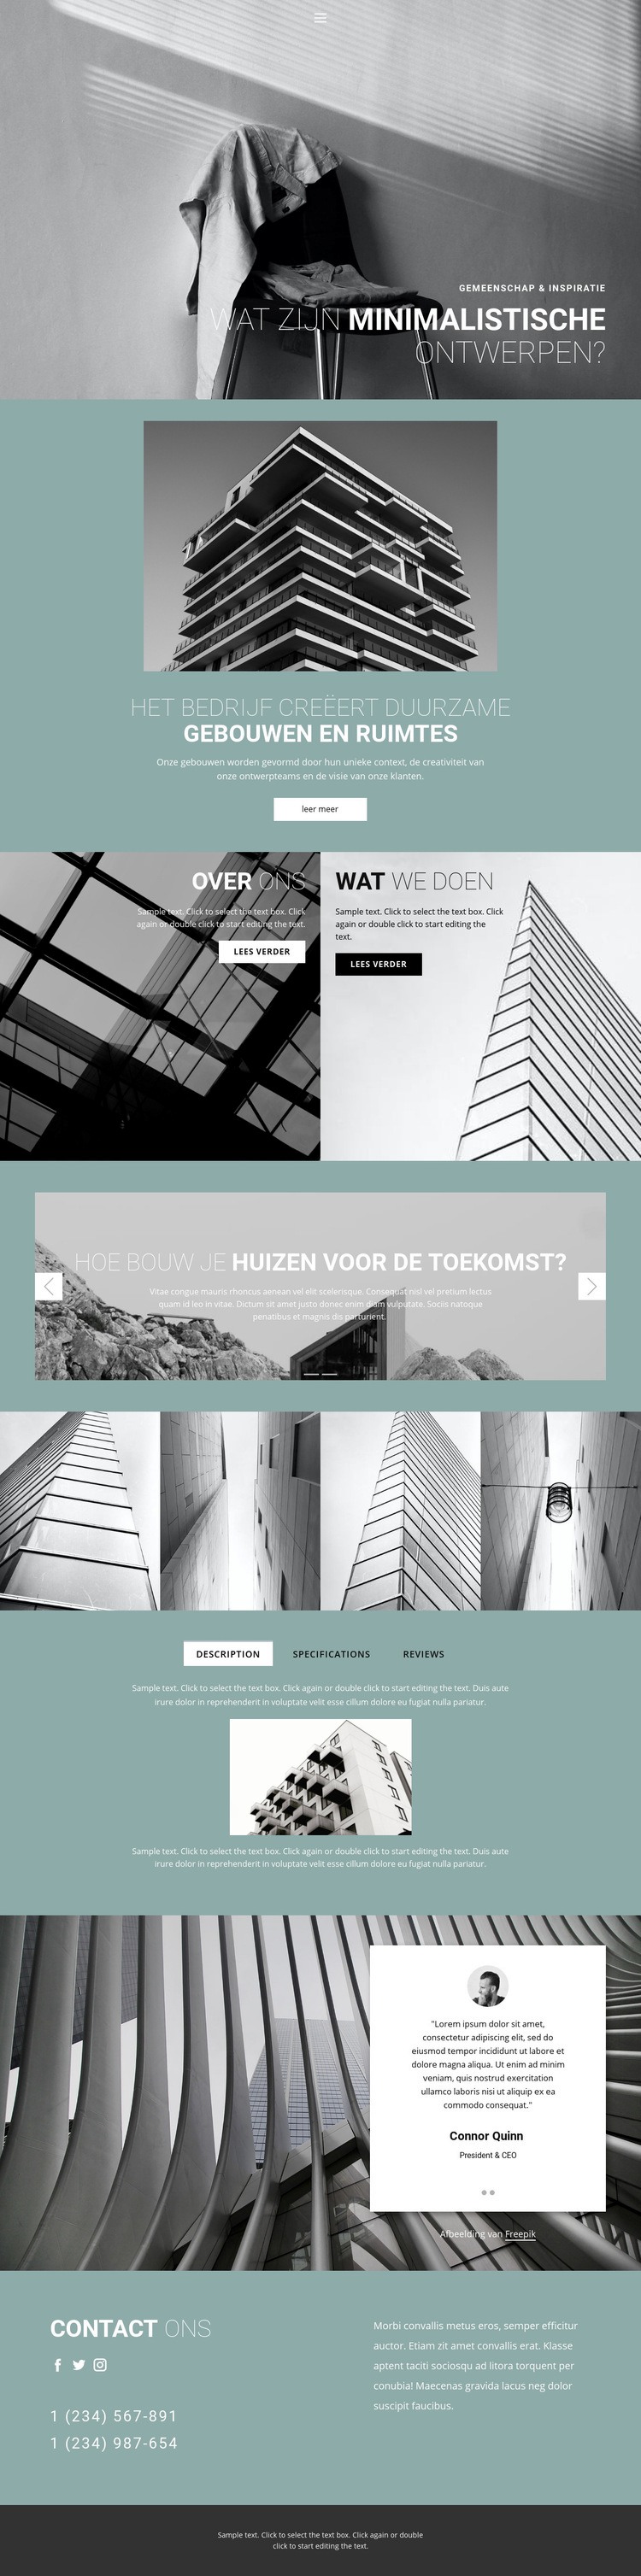 Perfecte architectuurideeën Website ontwerp